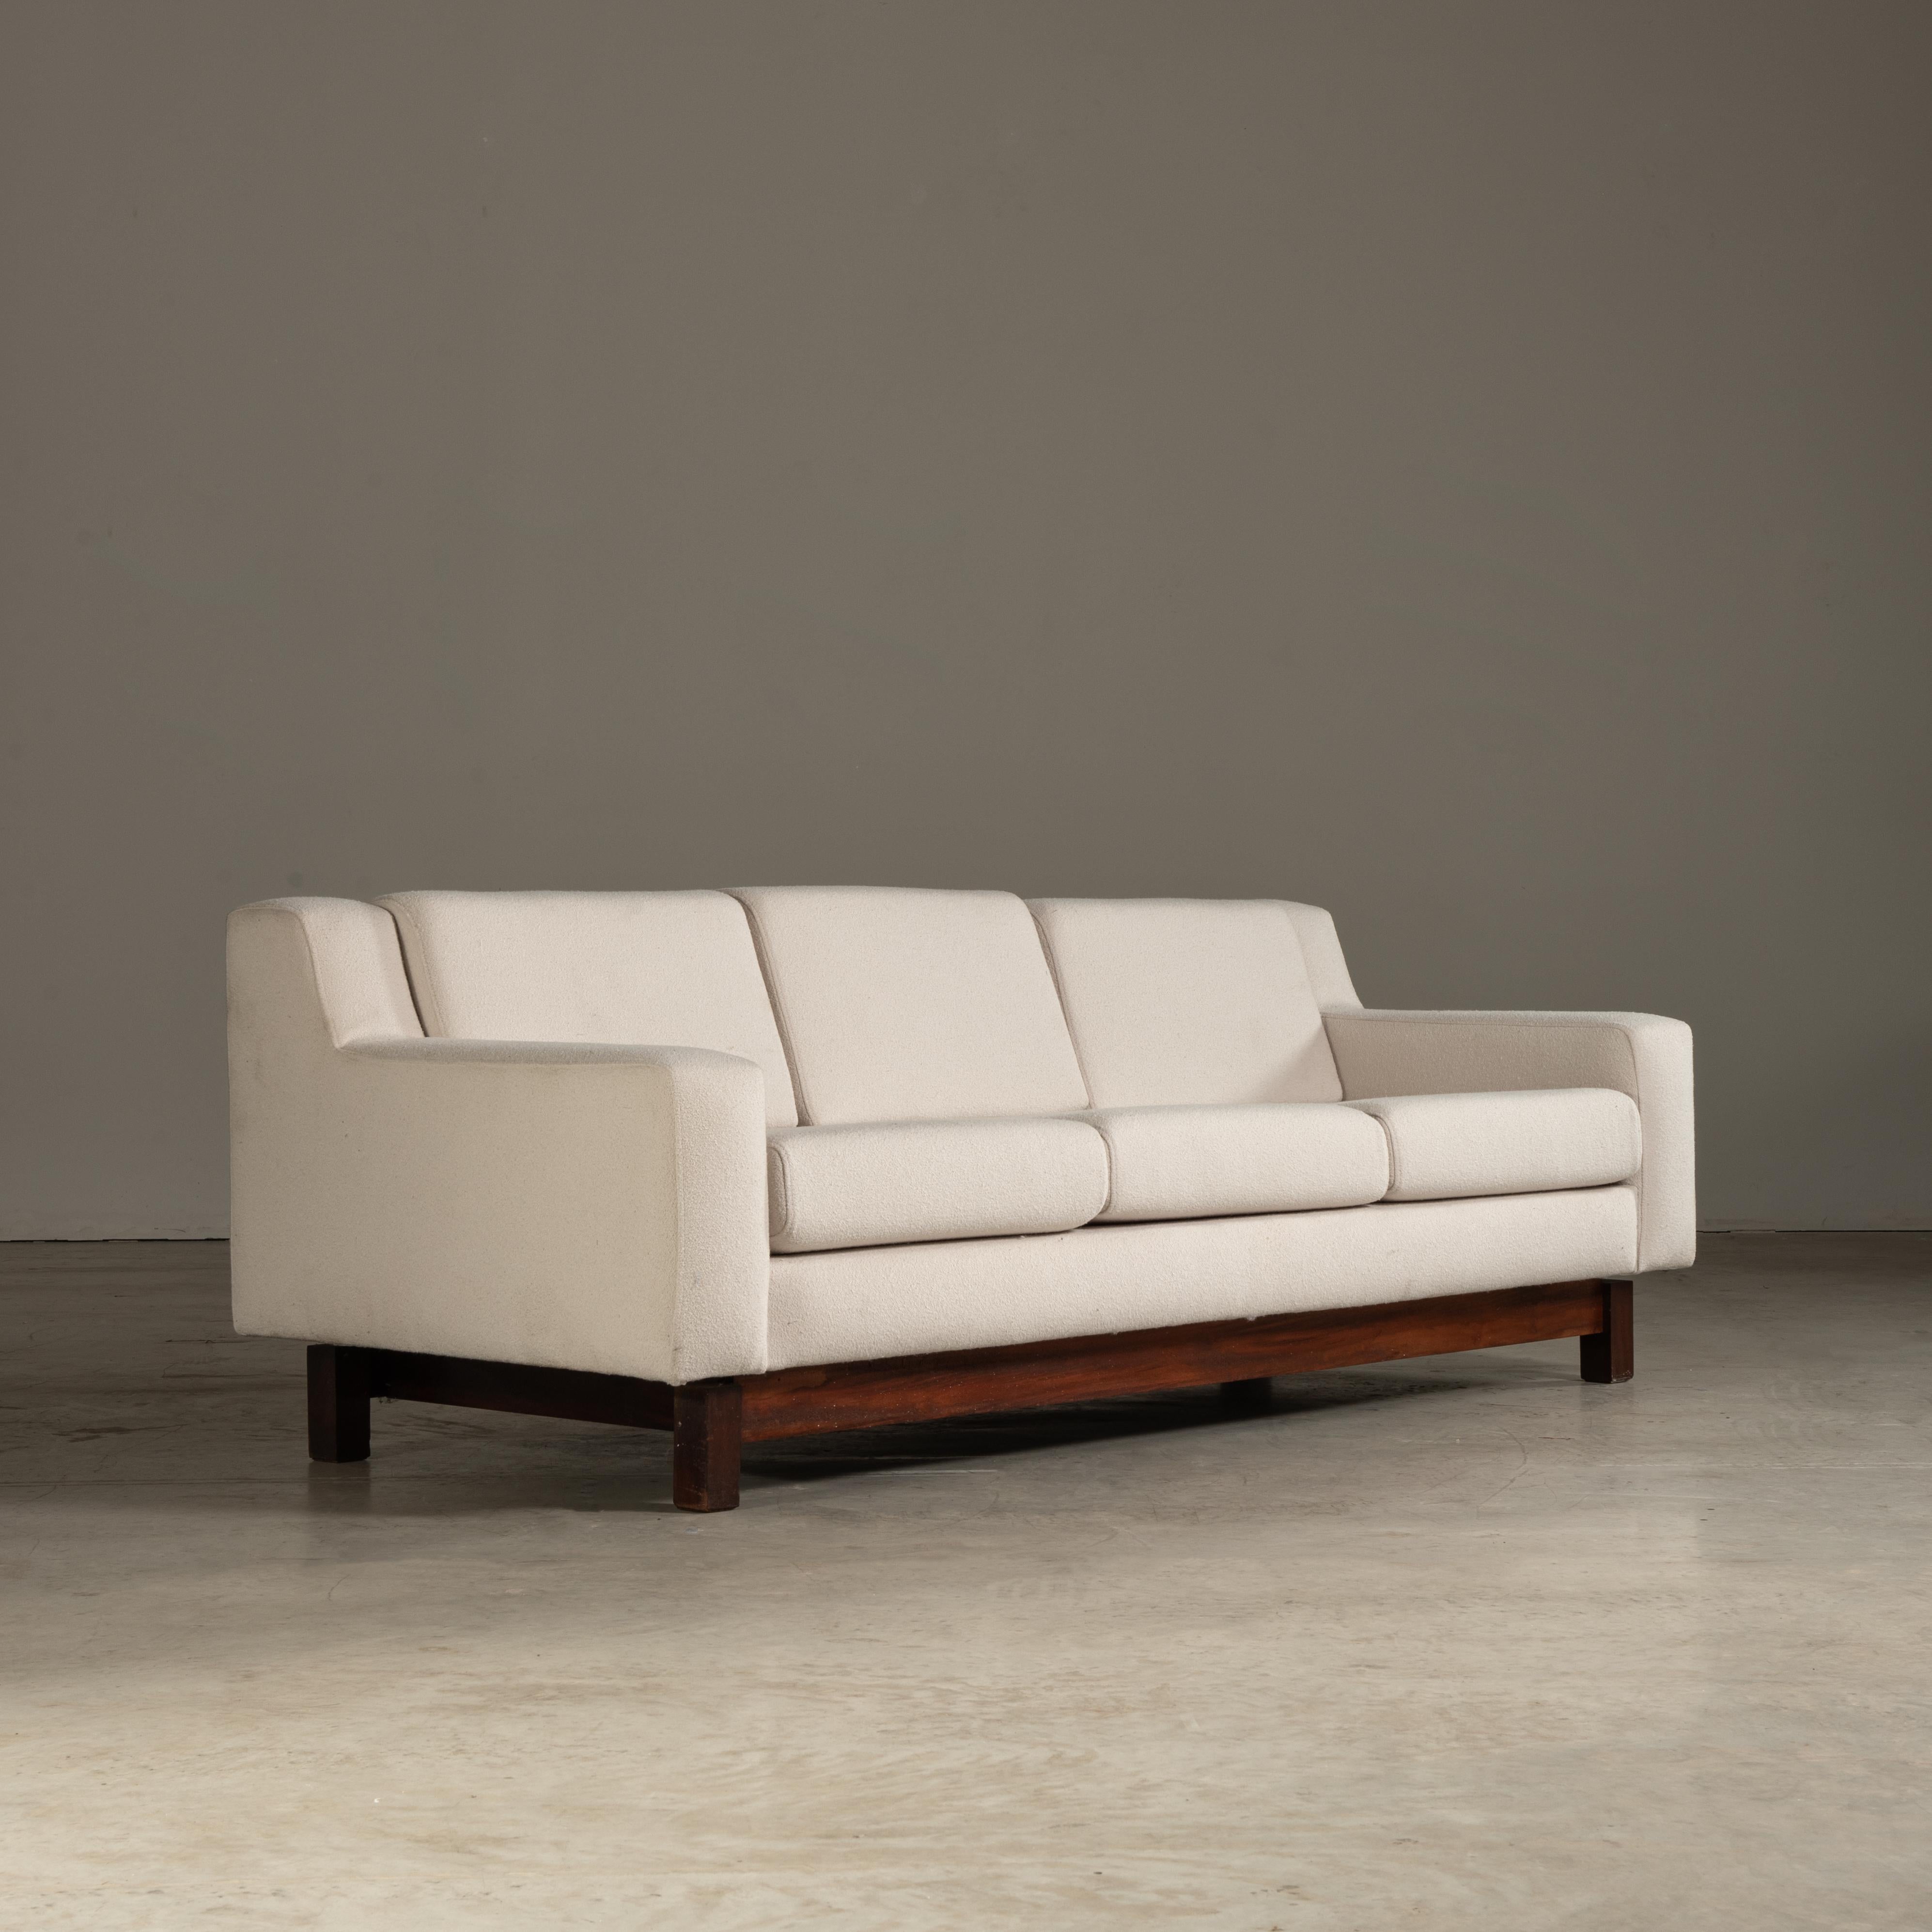 Ce canapé, conçu par Sérgio Rodrigues, est une pièce exquise de mobilier moderne du milieu du siècle qui incarne le caractère distinctif du design brésilien. Fabriqué à partir d'un bois tropical robuste, il est à la fois un hommage à la riche